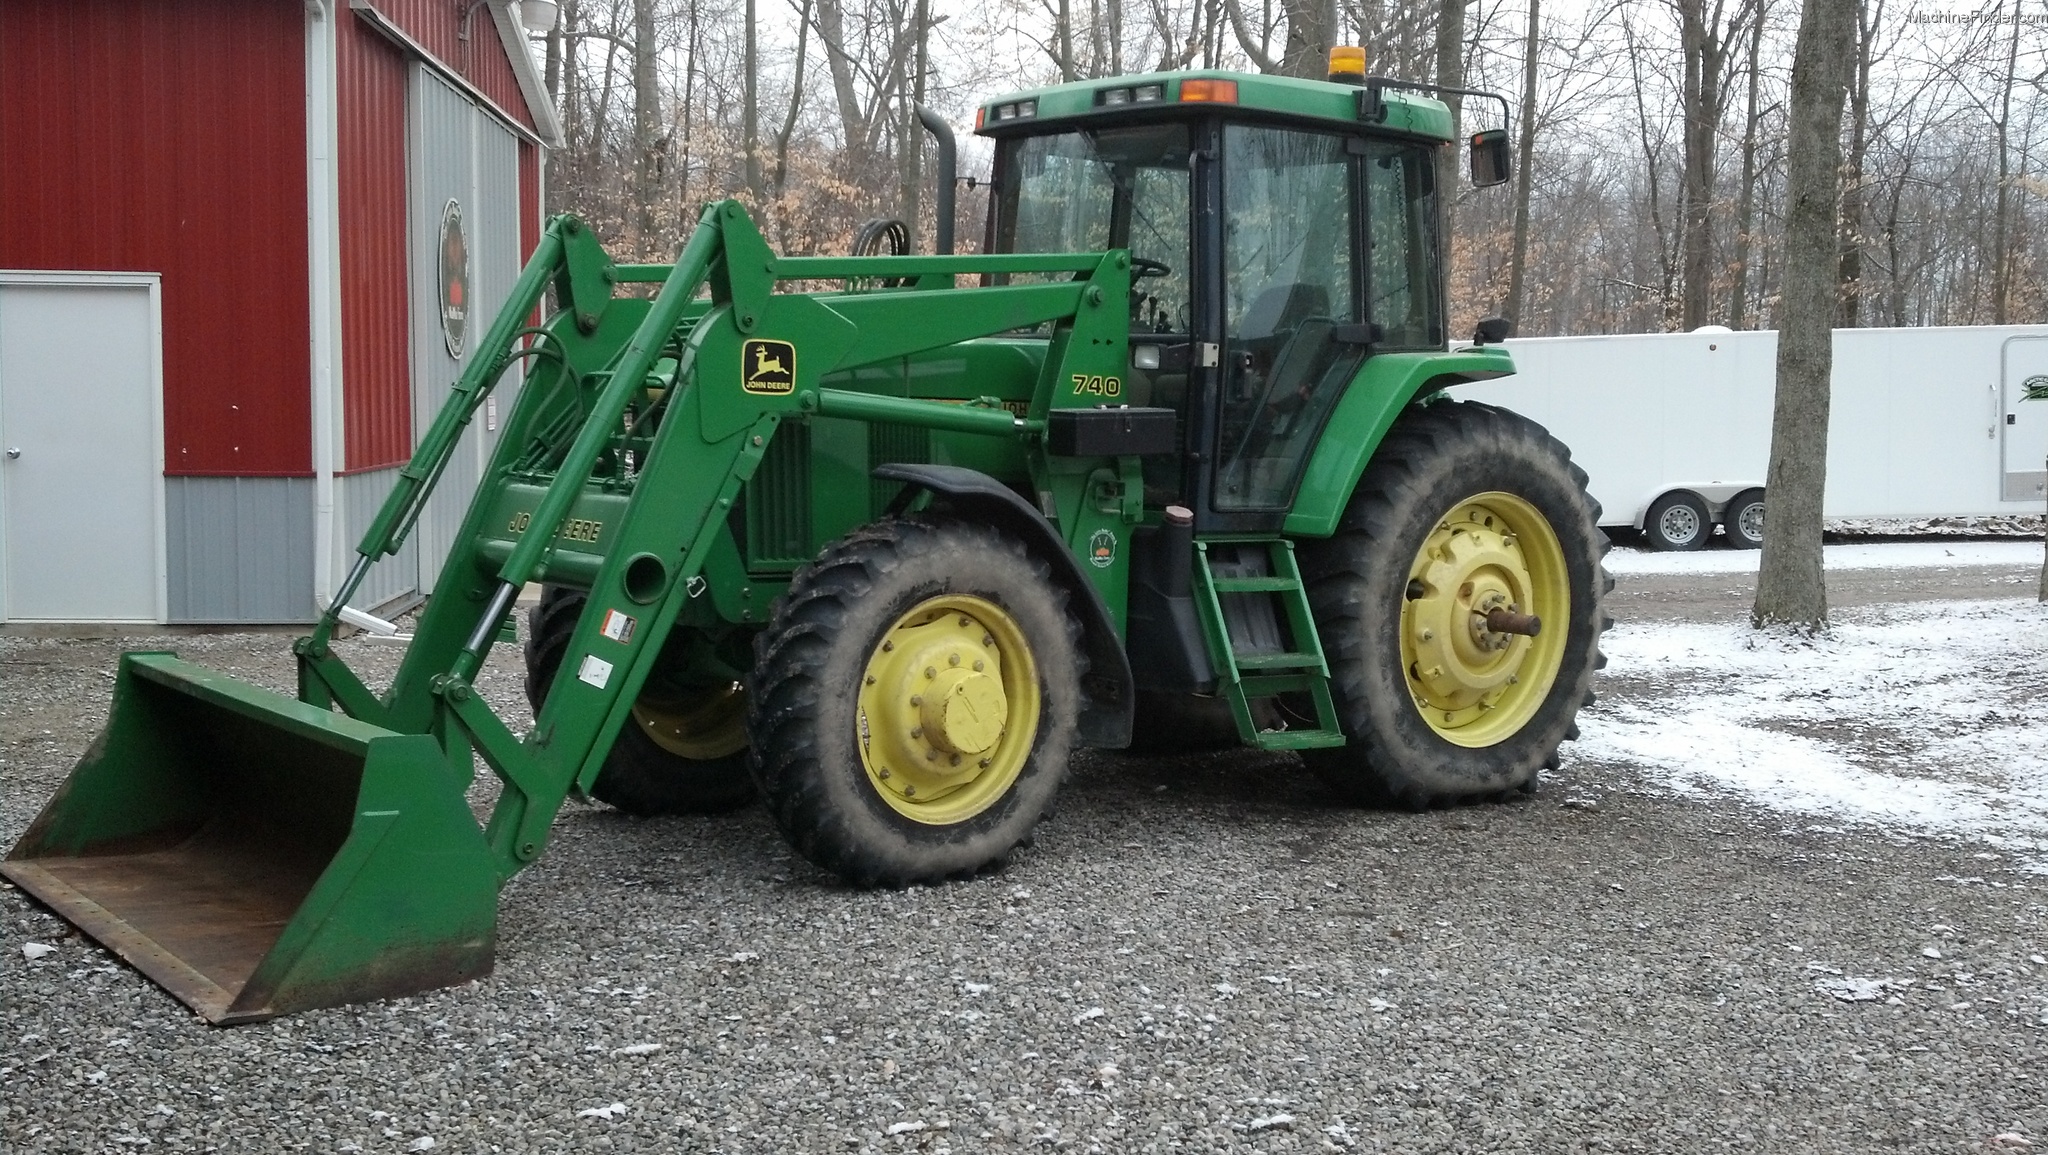 1994 John Deere 7200 Tractors - Row Crop (+100hp) - John Deere ...